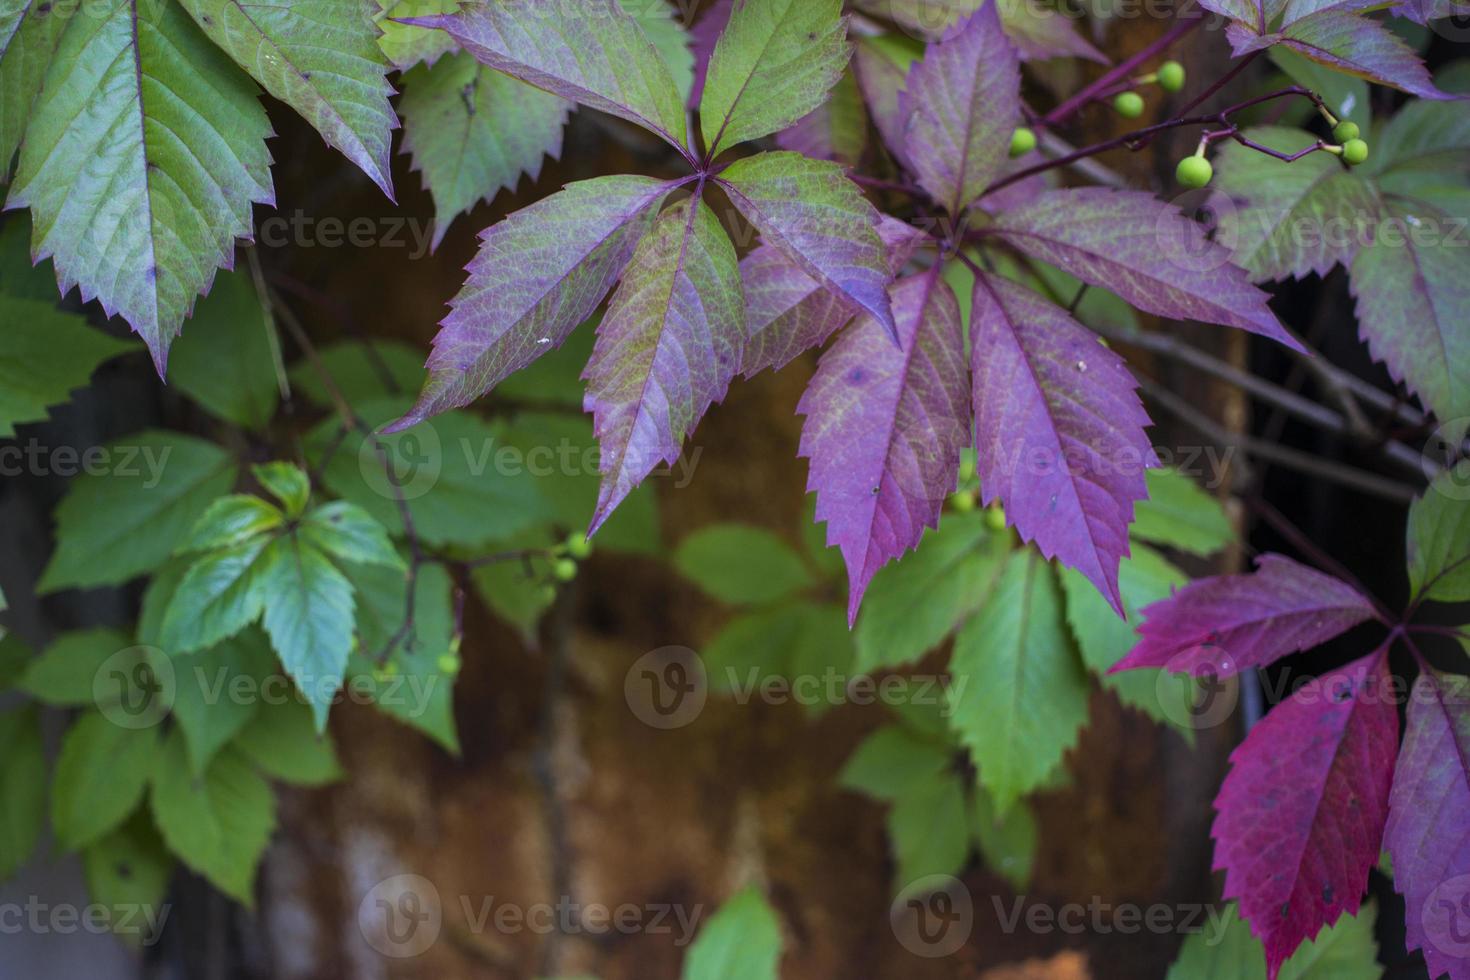 parthenocissus quinquefolia, connue sous le nom de vigne vierge, vigne vierge, lierre à cinq feuilles. feuillage vert. fond naturel. photo